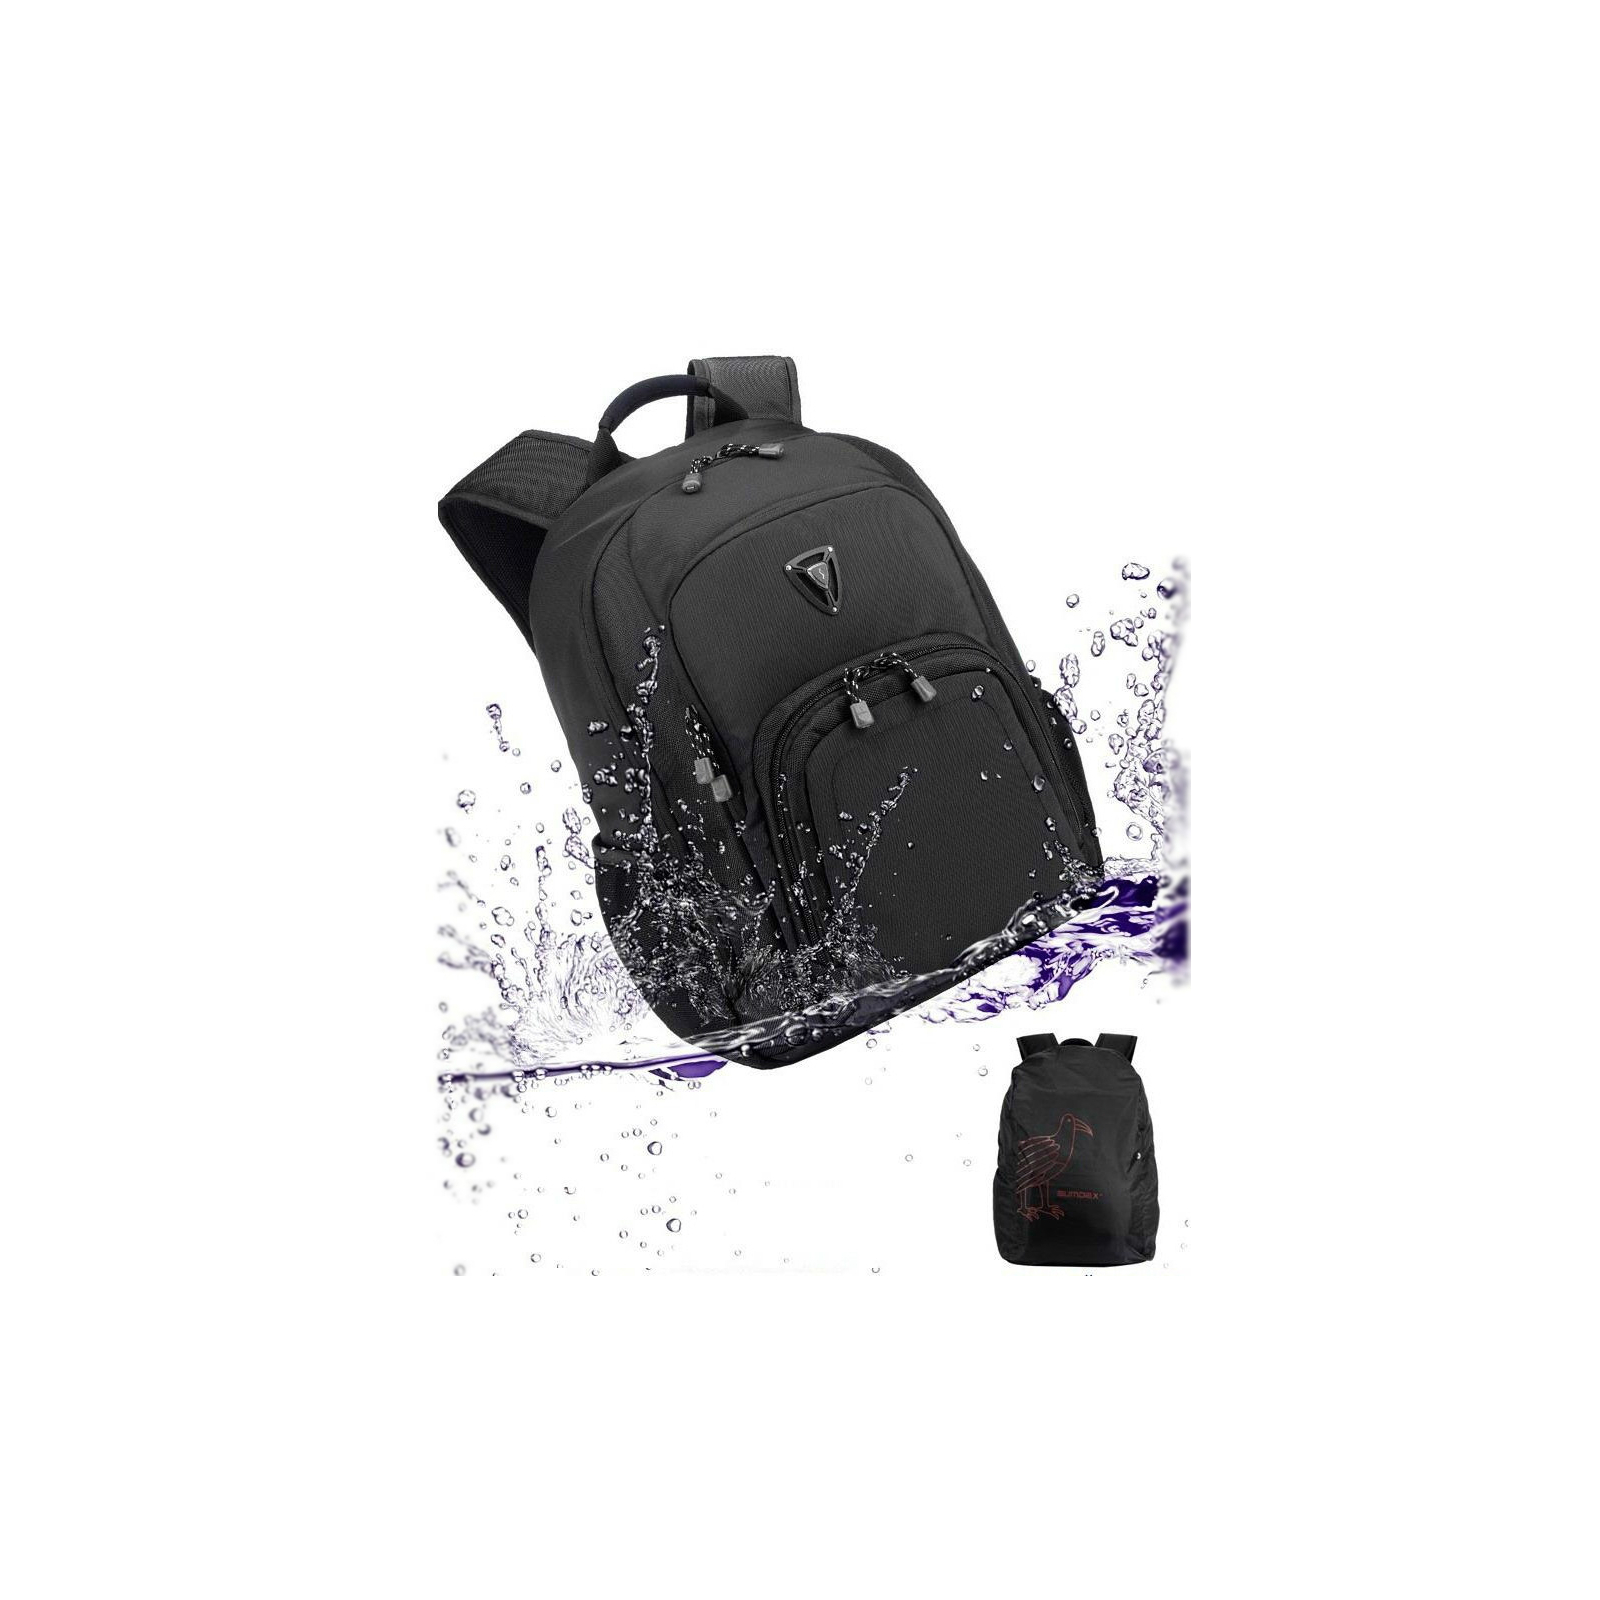 Рюкзак для ноутбука Sumdex 16'' PON-394 Black (PON-394BK) изображение 9